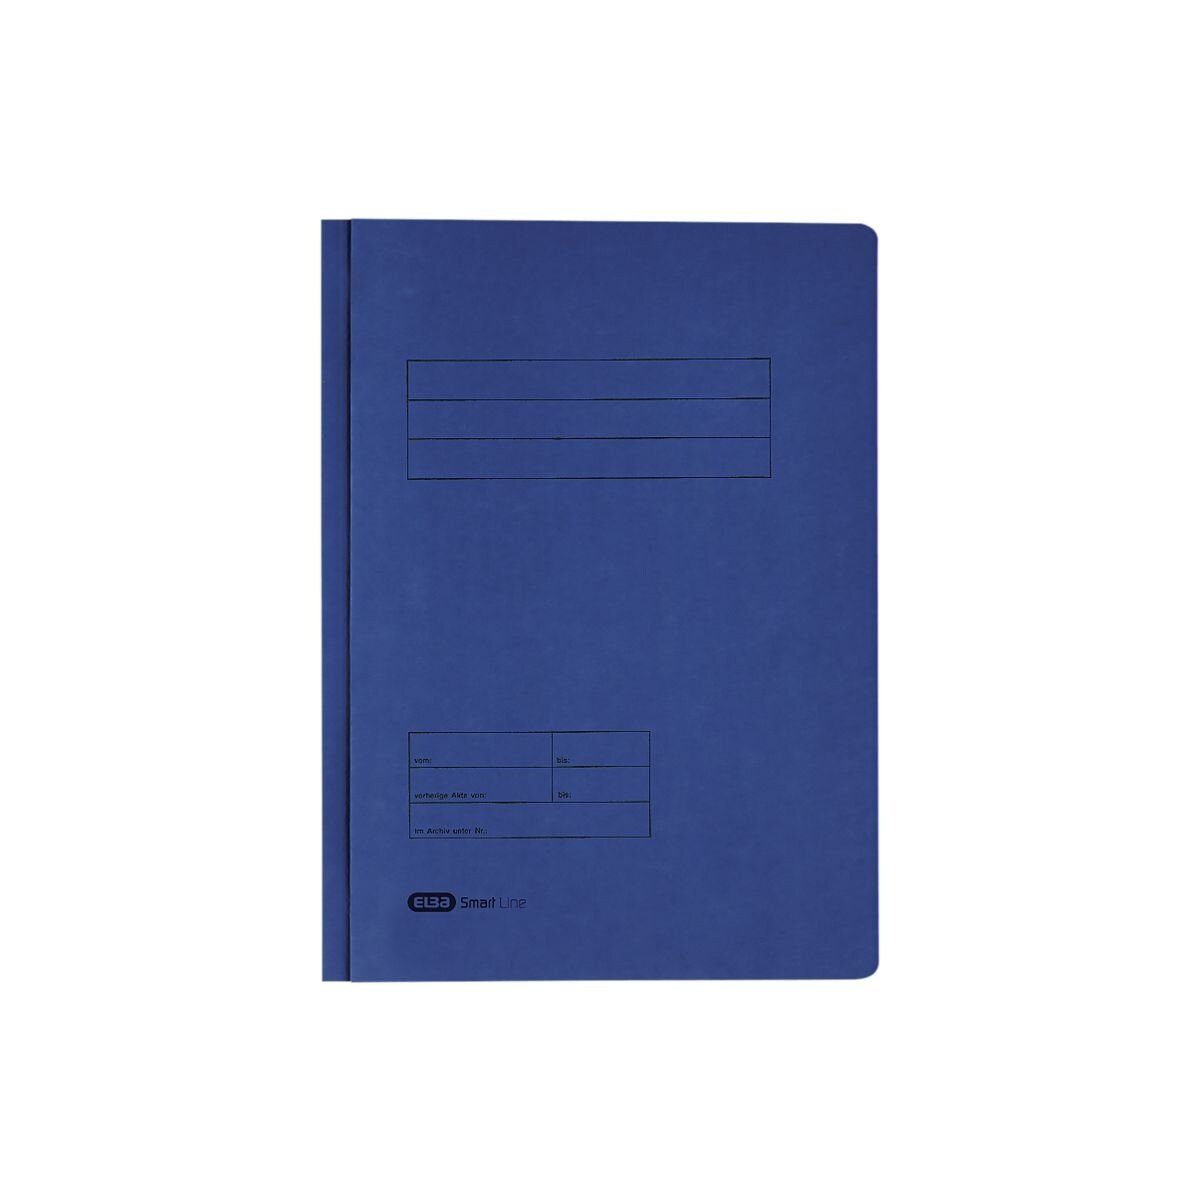 ELBA Hefter 10042122, Doppelhefter, Format DIN A4, aus Karton blau